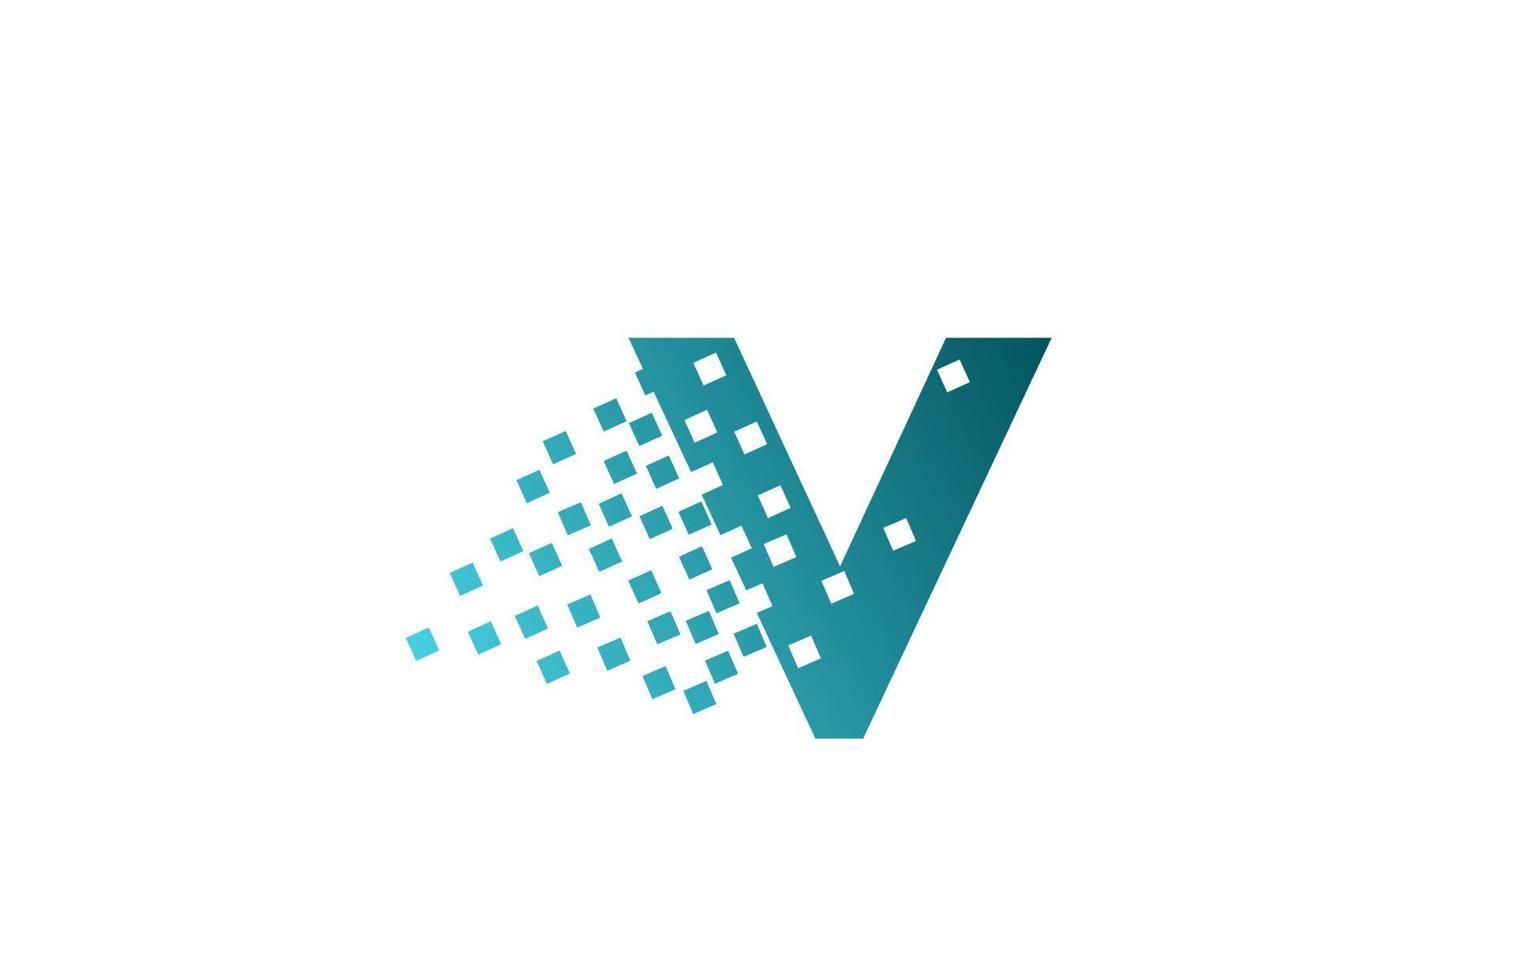 V icono de logotipo de letra del alfabeto para empresa y negocio. diseño de píxeles erosionados verdes para identidad corporativa vector